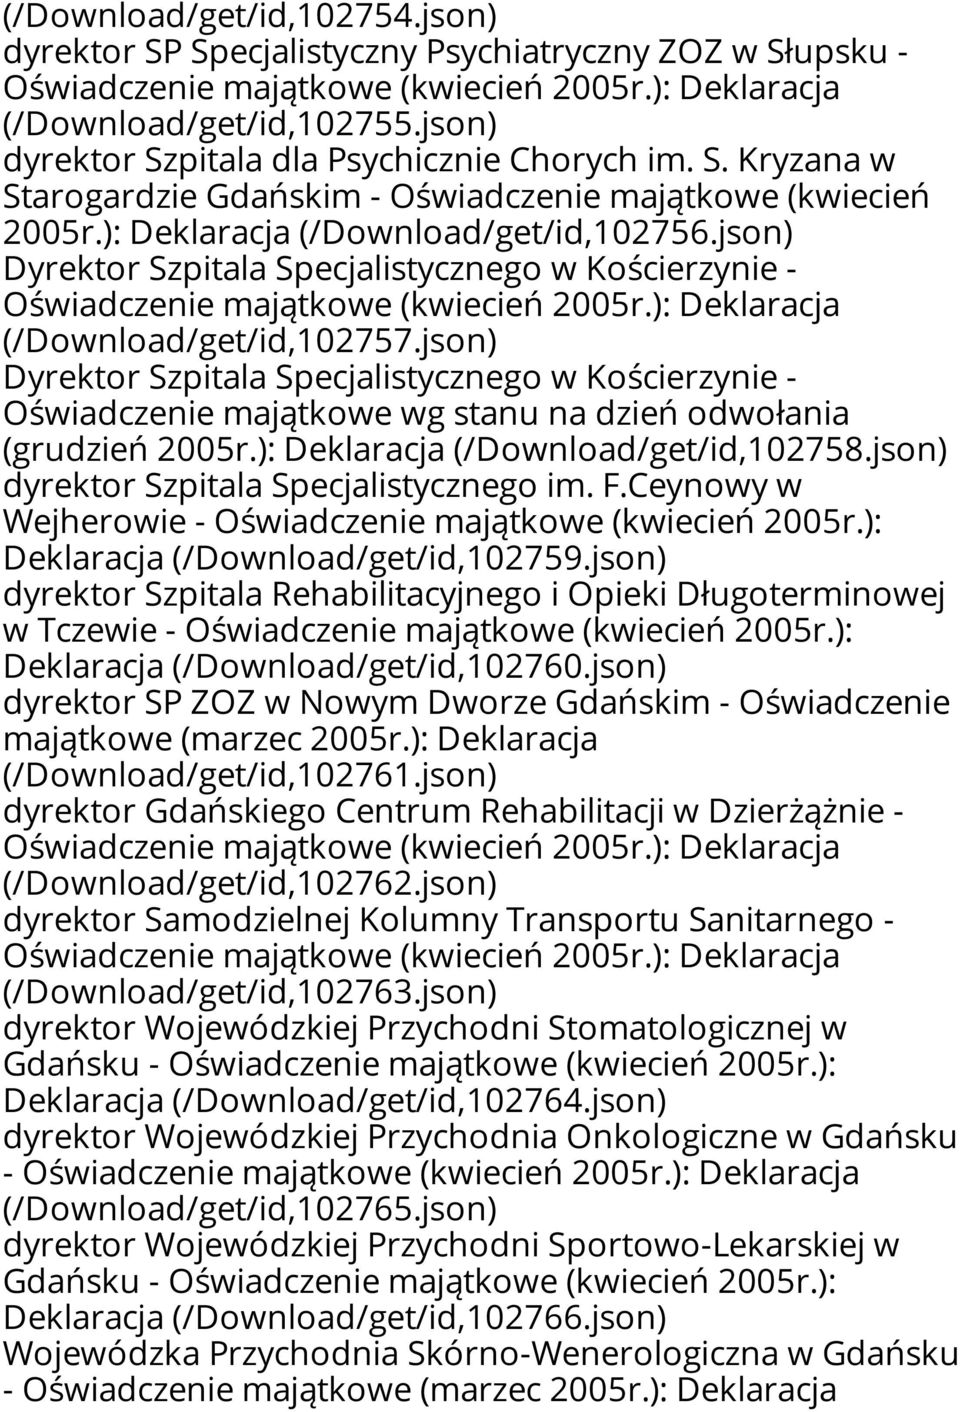 json) Dyrektor Szpitala Specjalistycznego w Kościerzynie - Oświadczenie majątkowe wg stanu na dzień odwołania (grudzień 2005r.): Deklaracja (/Download/get/id,102758.